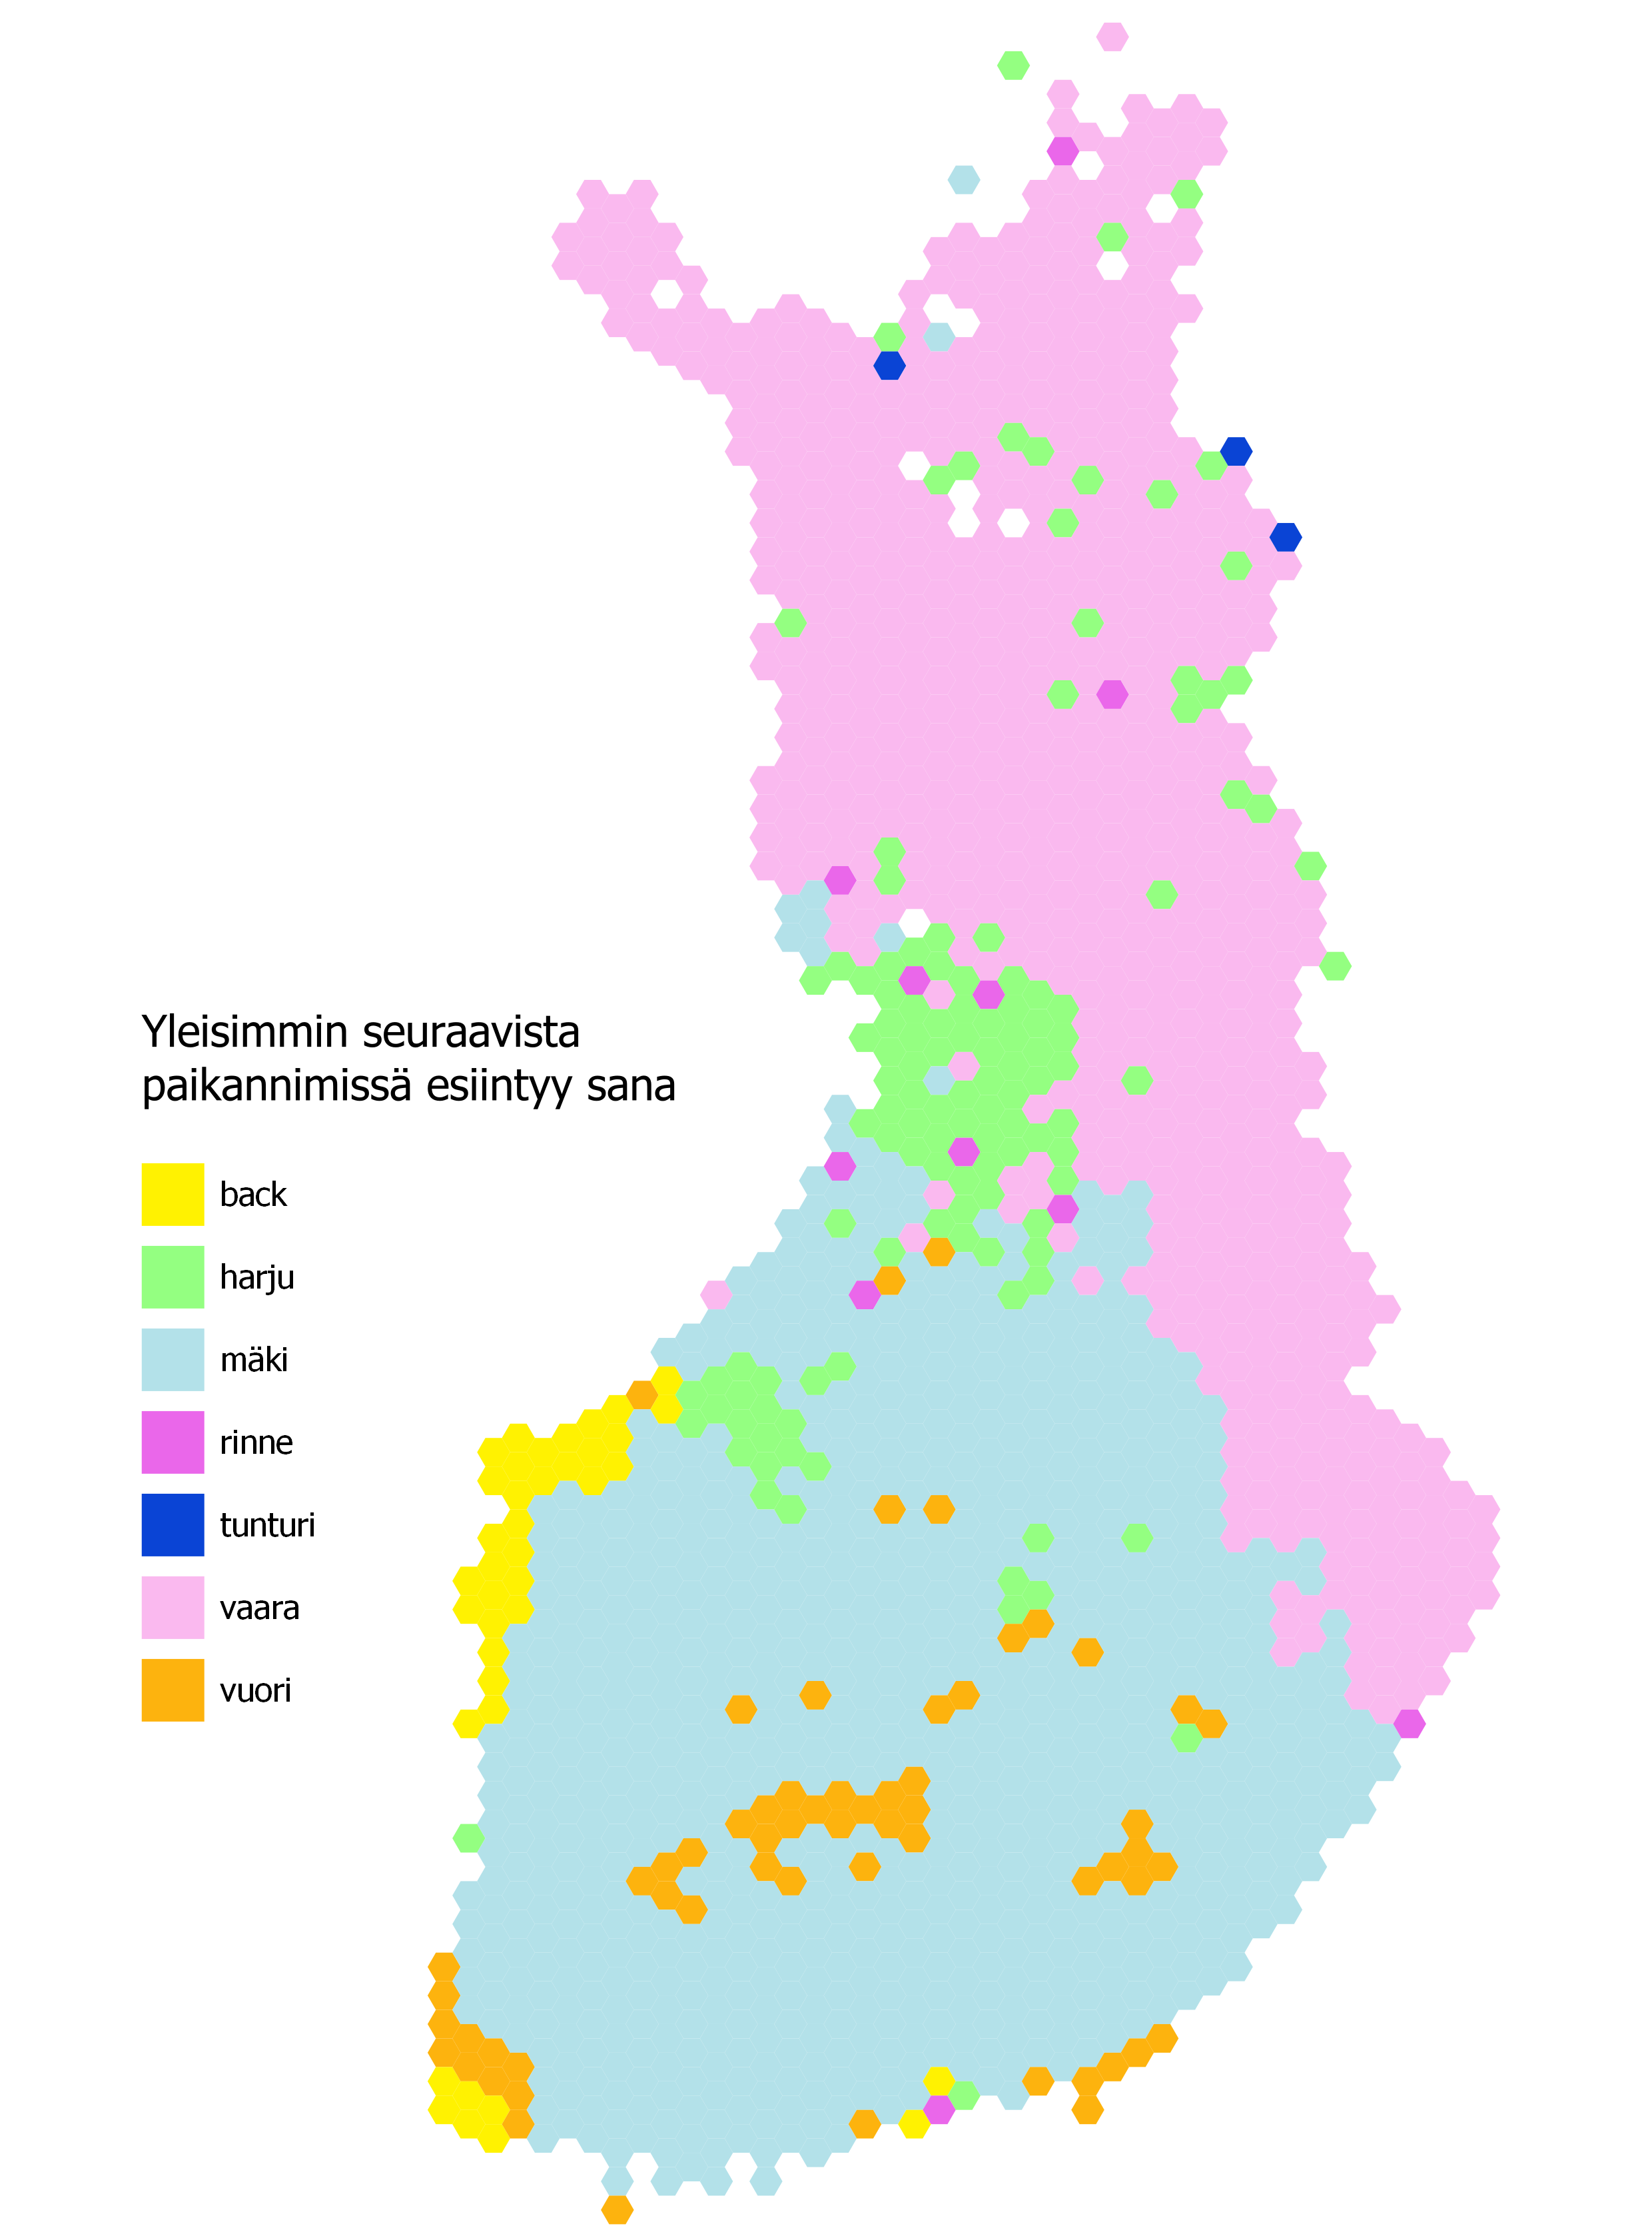 "Kartta, joka esittää mikä on yleisim paikannimessä esiintyvä sana eri puolilla Suomea."